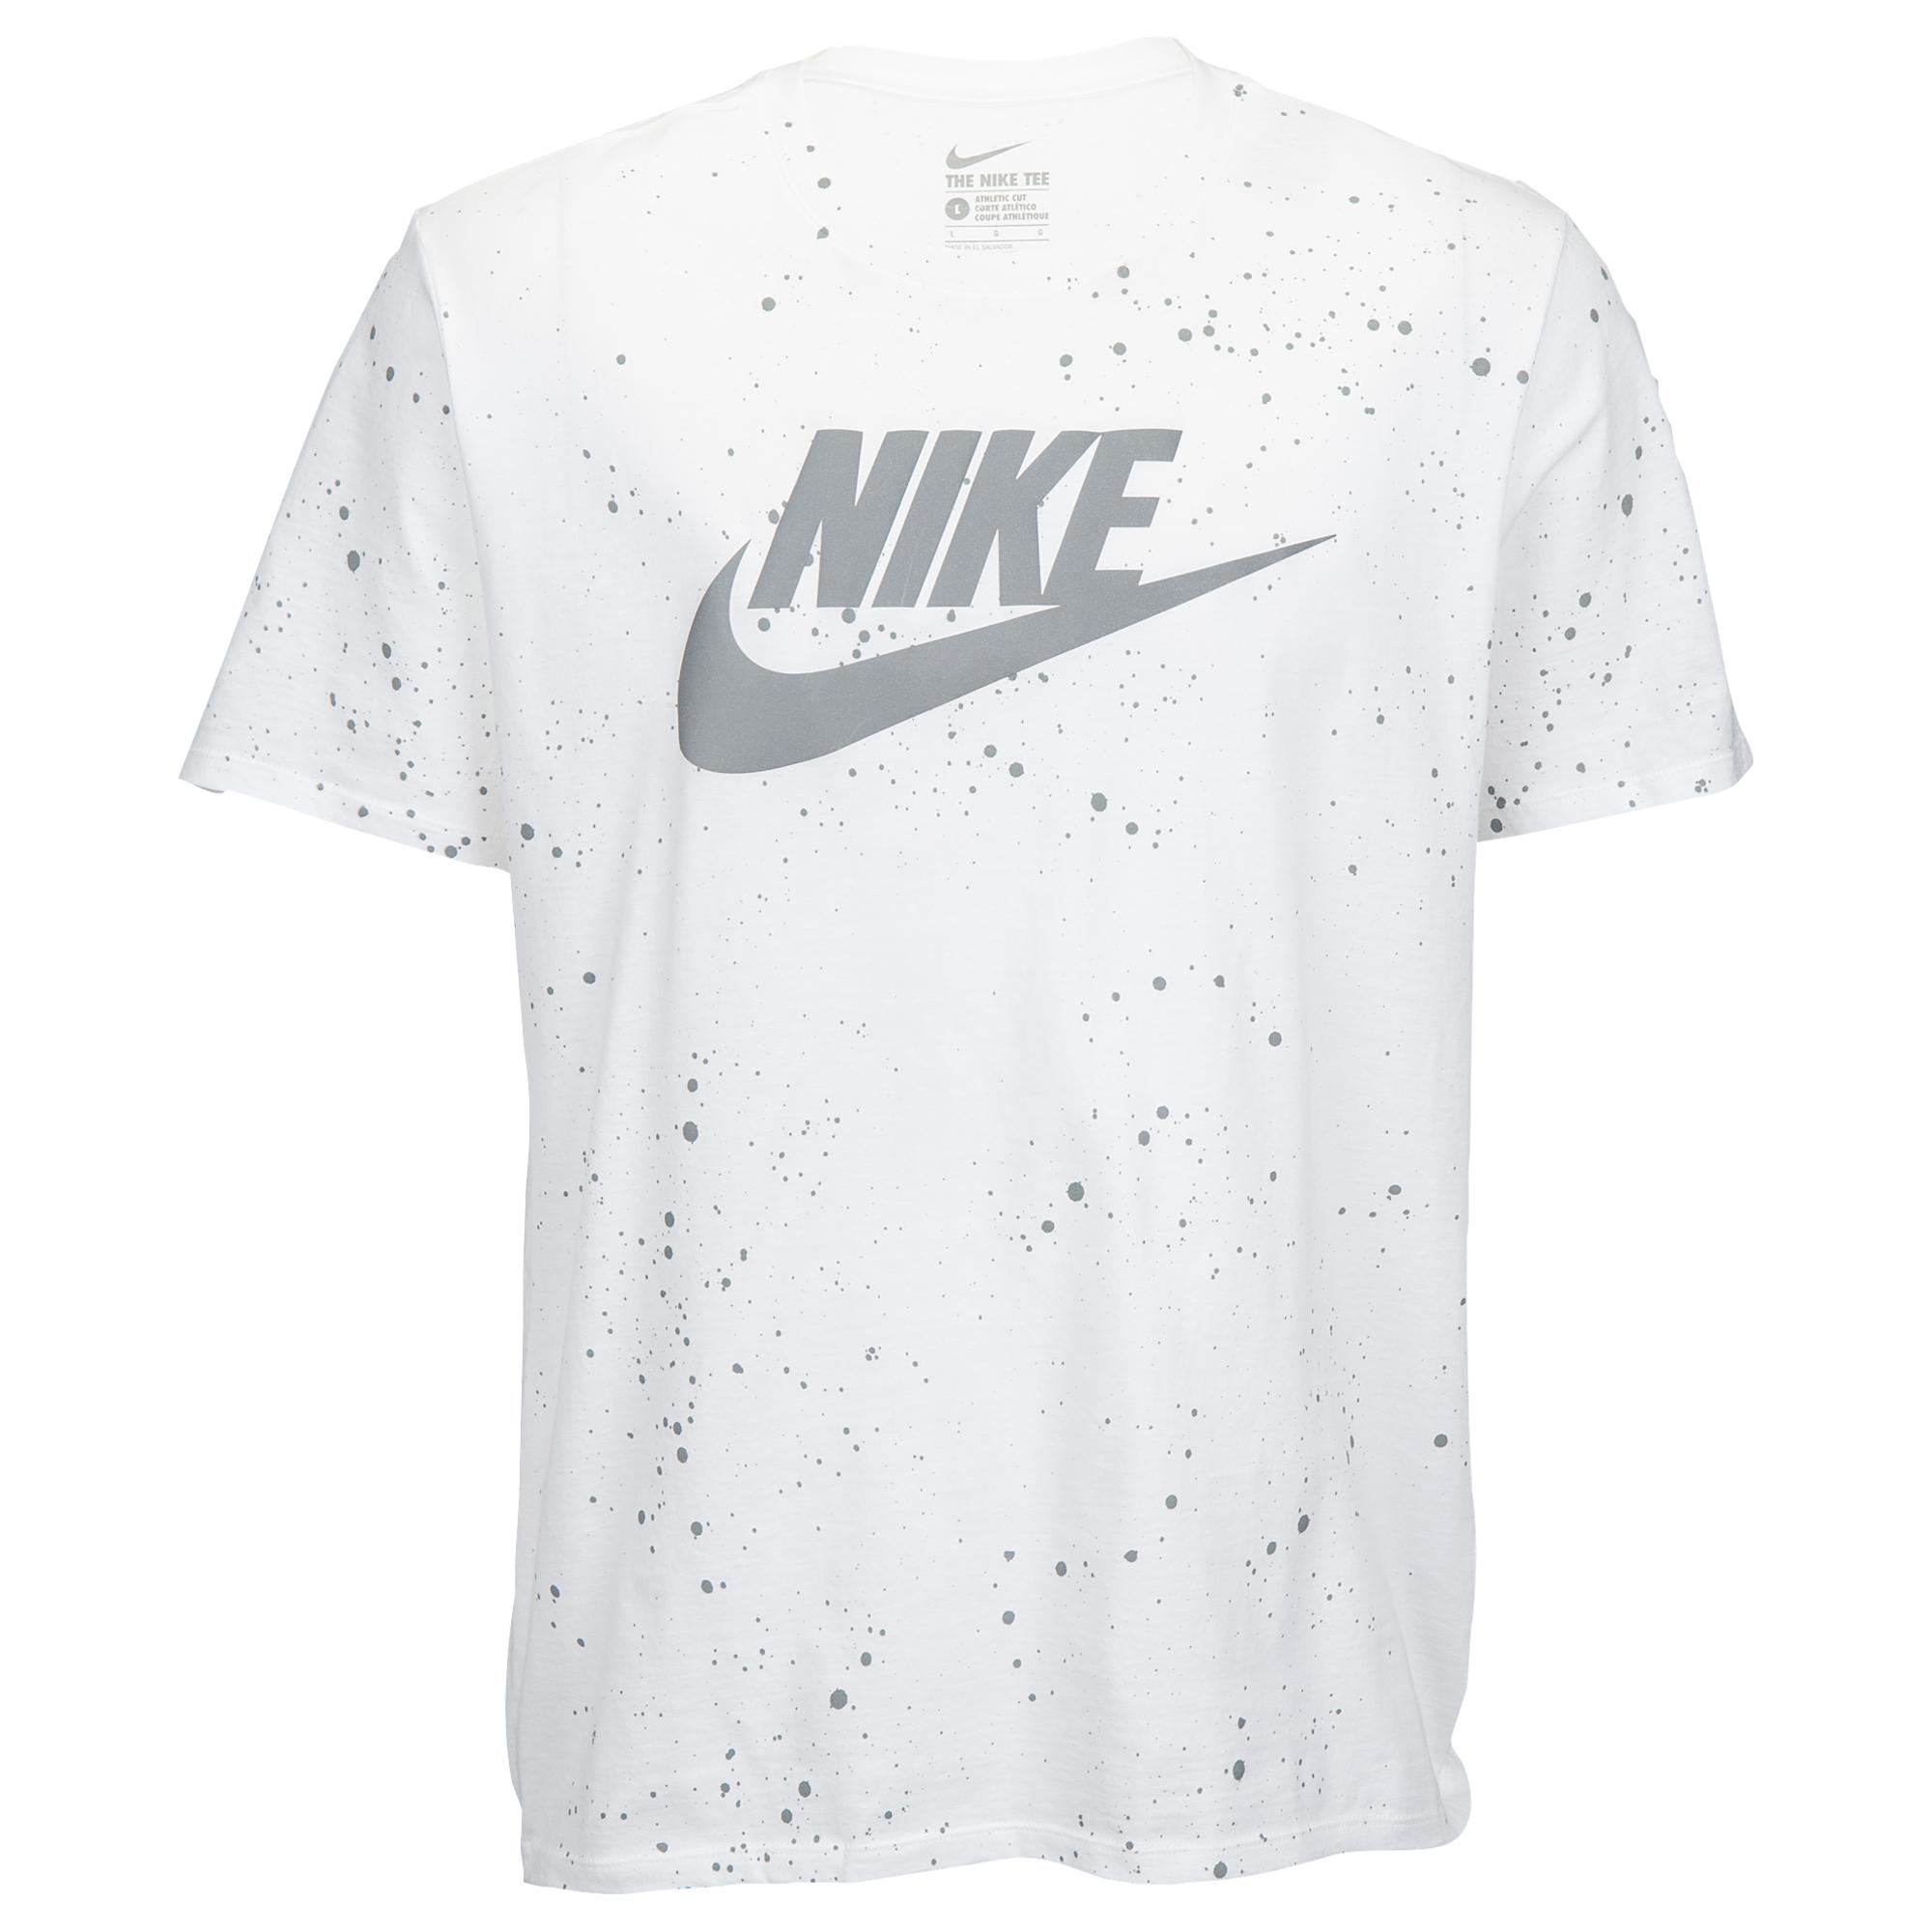 Nike Hazardous Speckle T-shirt in White for Men - Lyst